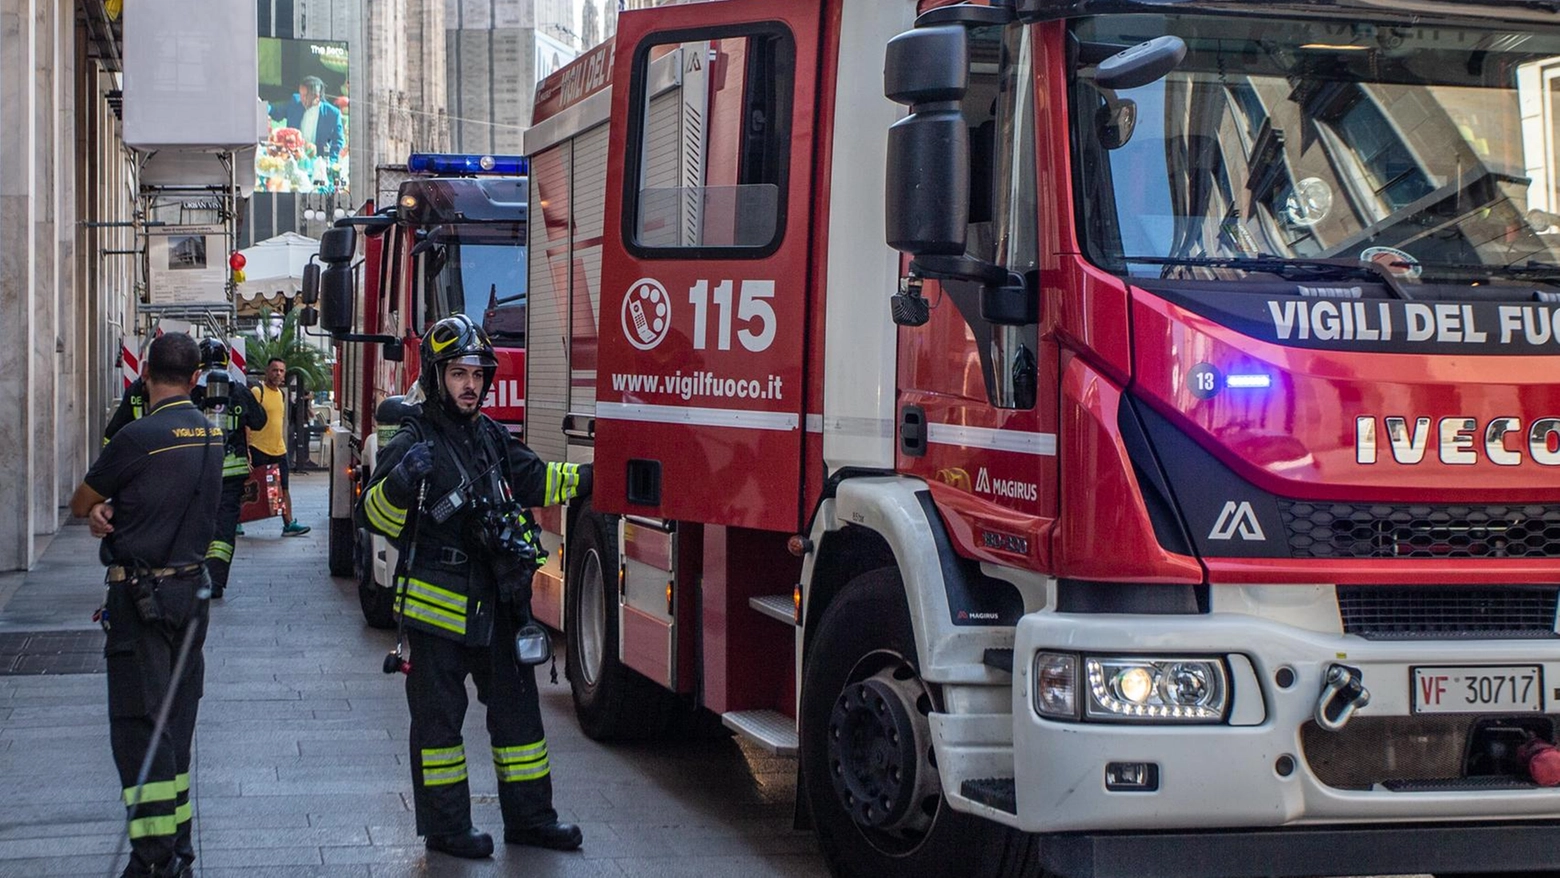 Venti forti a Milano causano danni e infortuni: vigili del fuoco impegnati in numerosi interventi per cadute di rami, cornicioni e incidenti sul lavoro. Situazione monitorata attentamente.